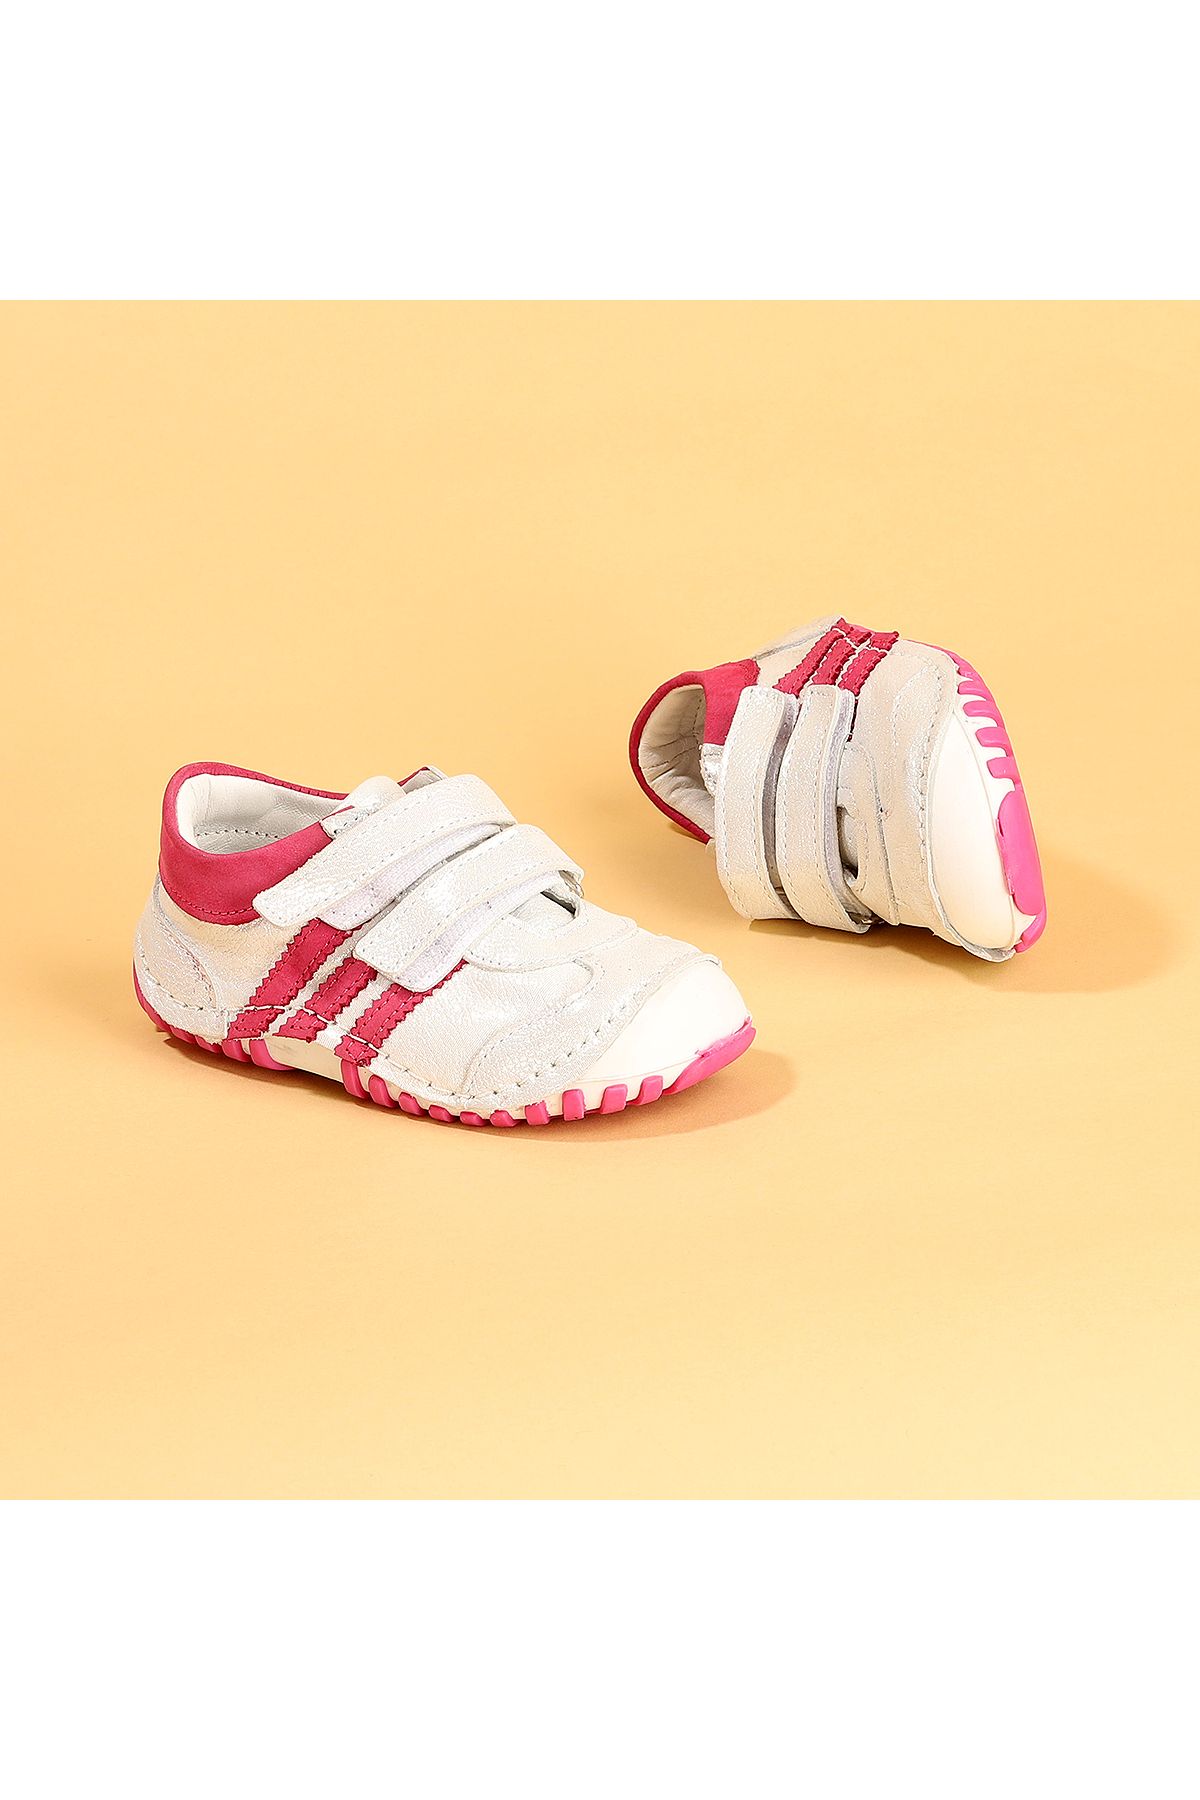 Kiko Kids Teo 138 %100 Deri Orto Pedik Cırtlı Kız Çocuk Ayakkabı